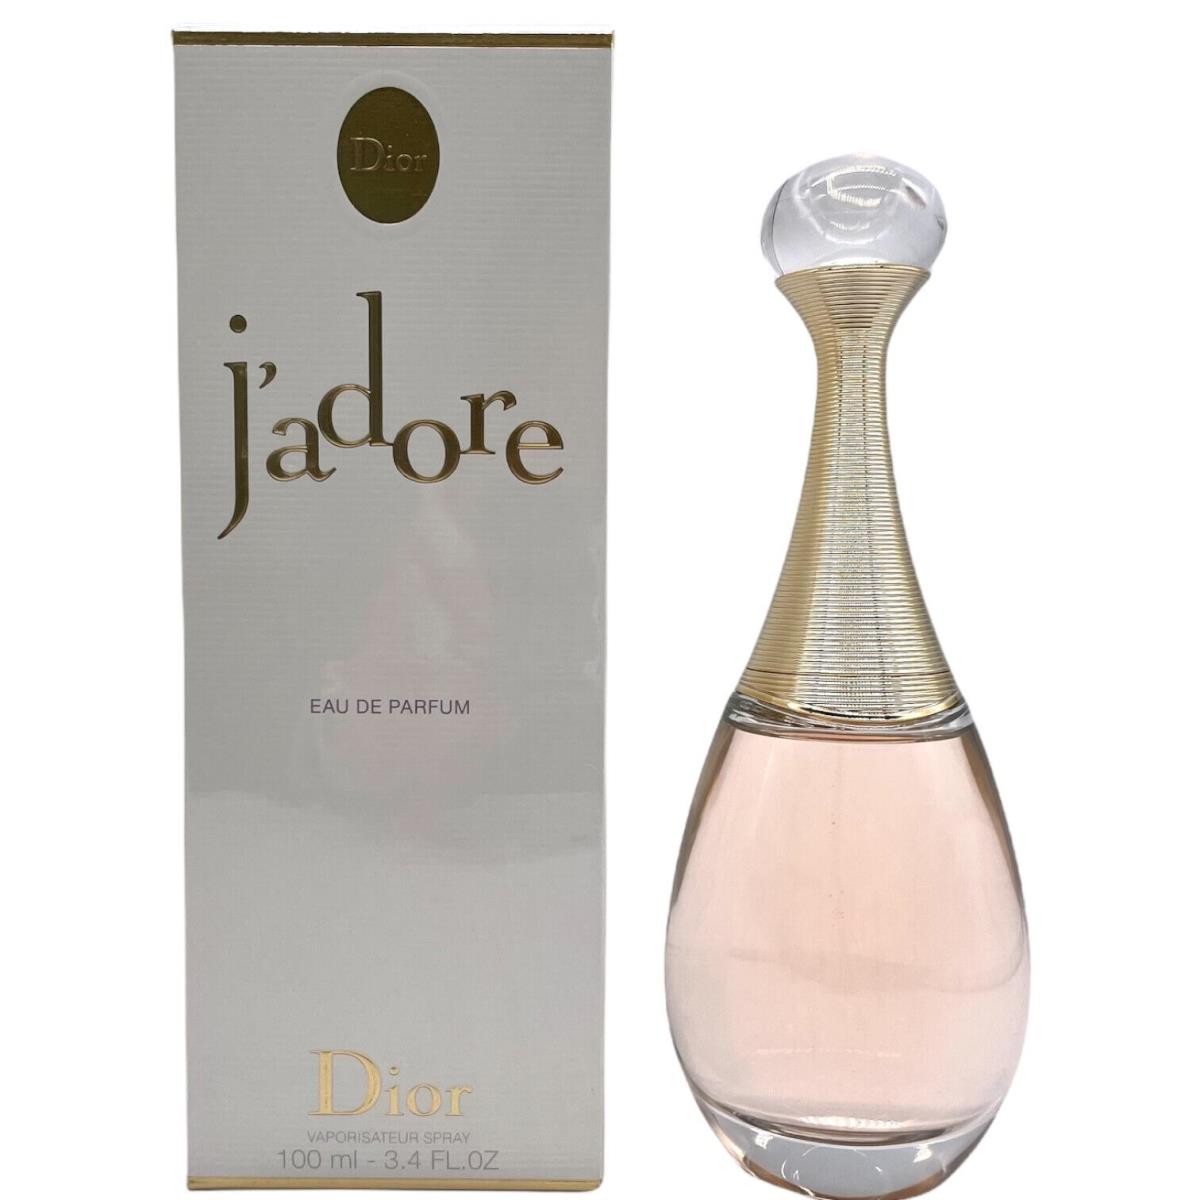 J`adore by Dior For Women 3.4 oz Eau de Parfum Spray